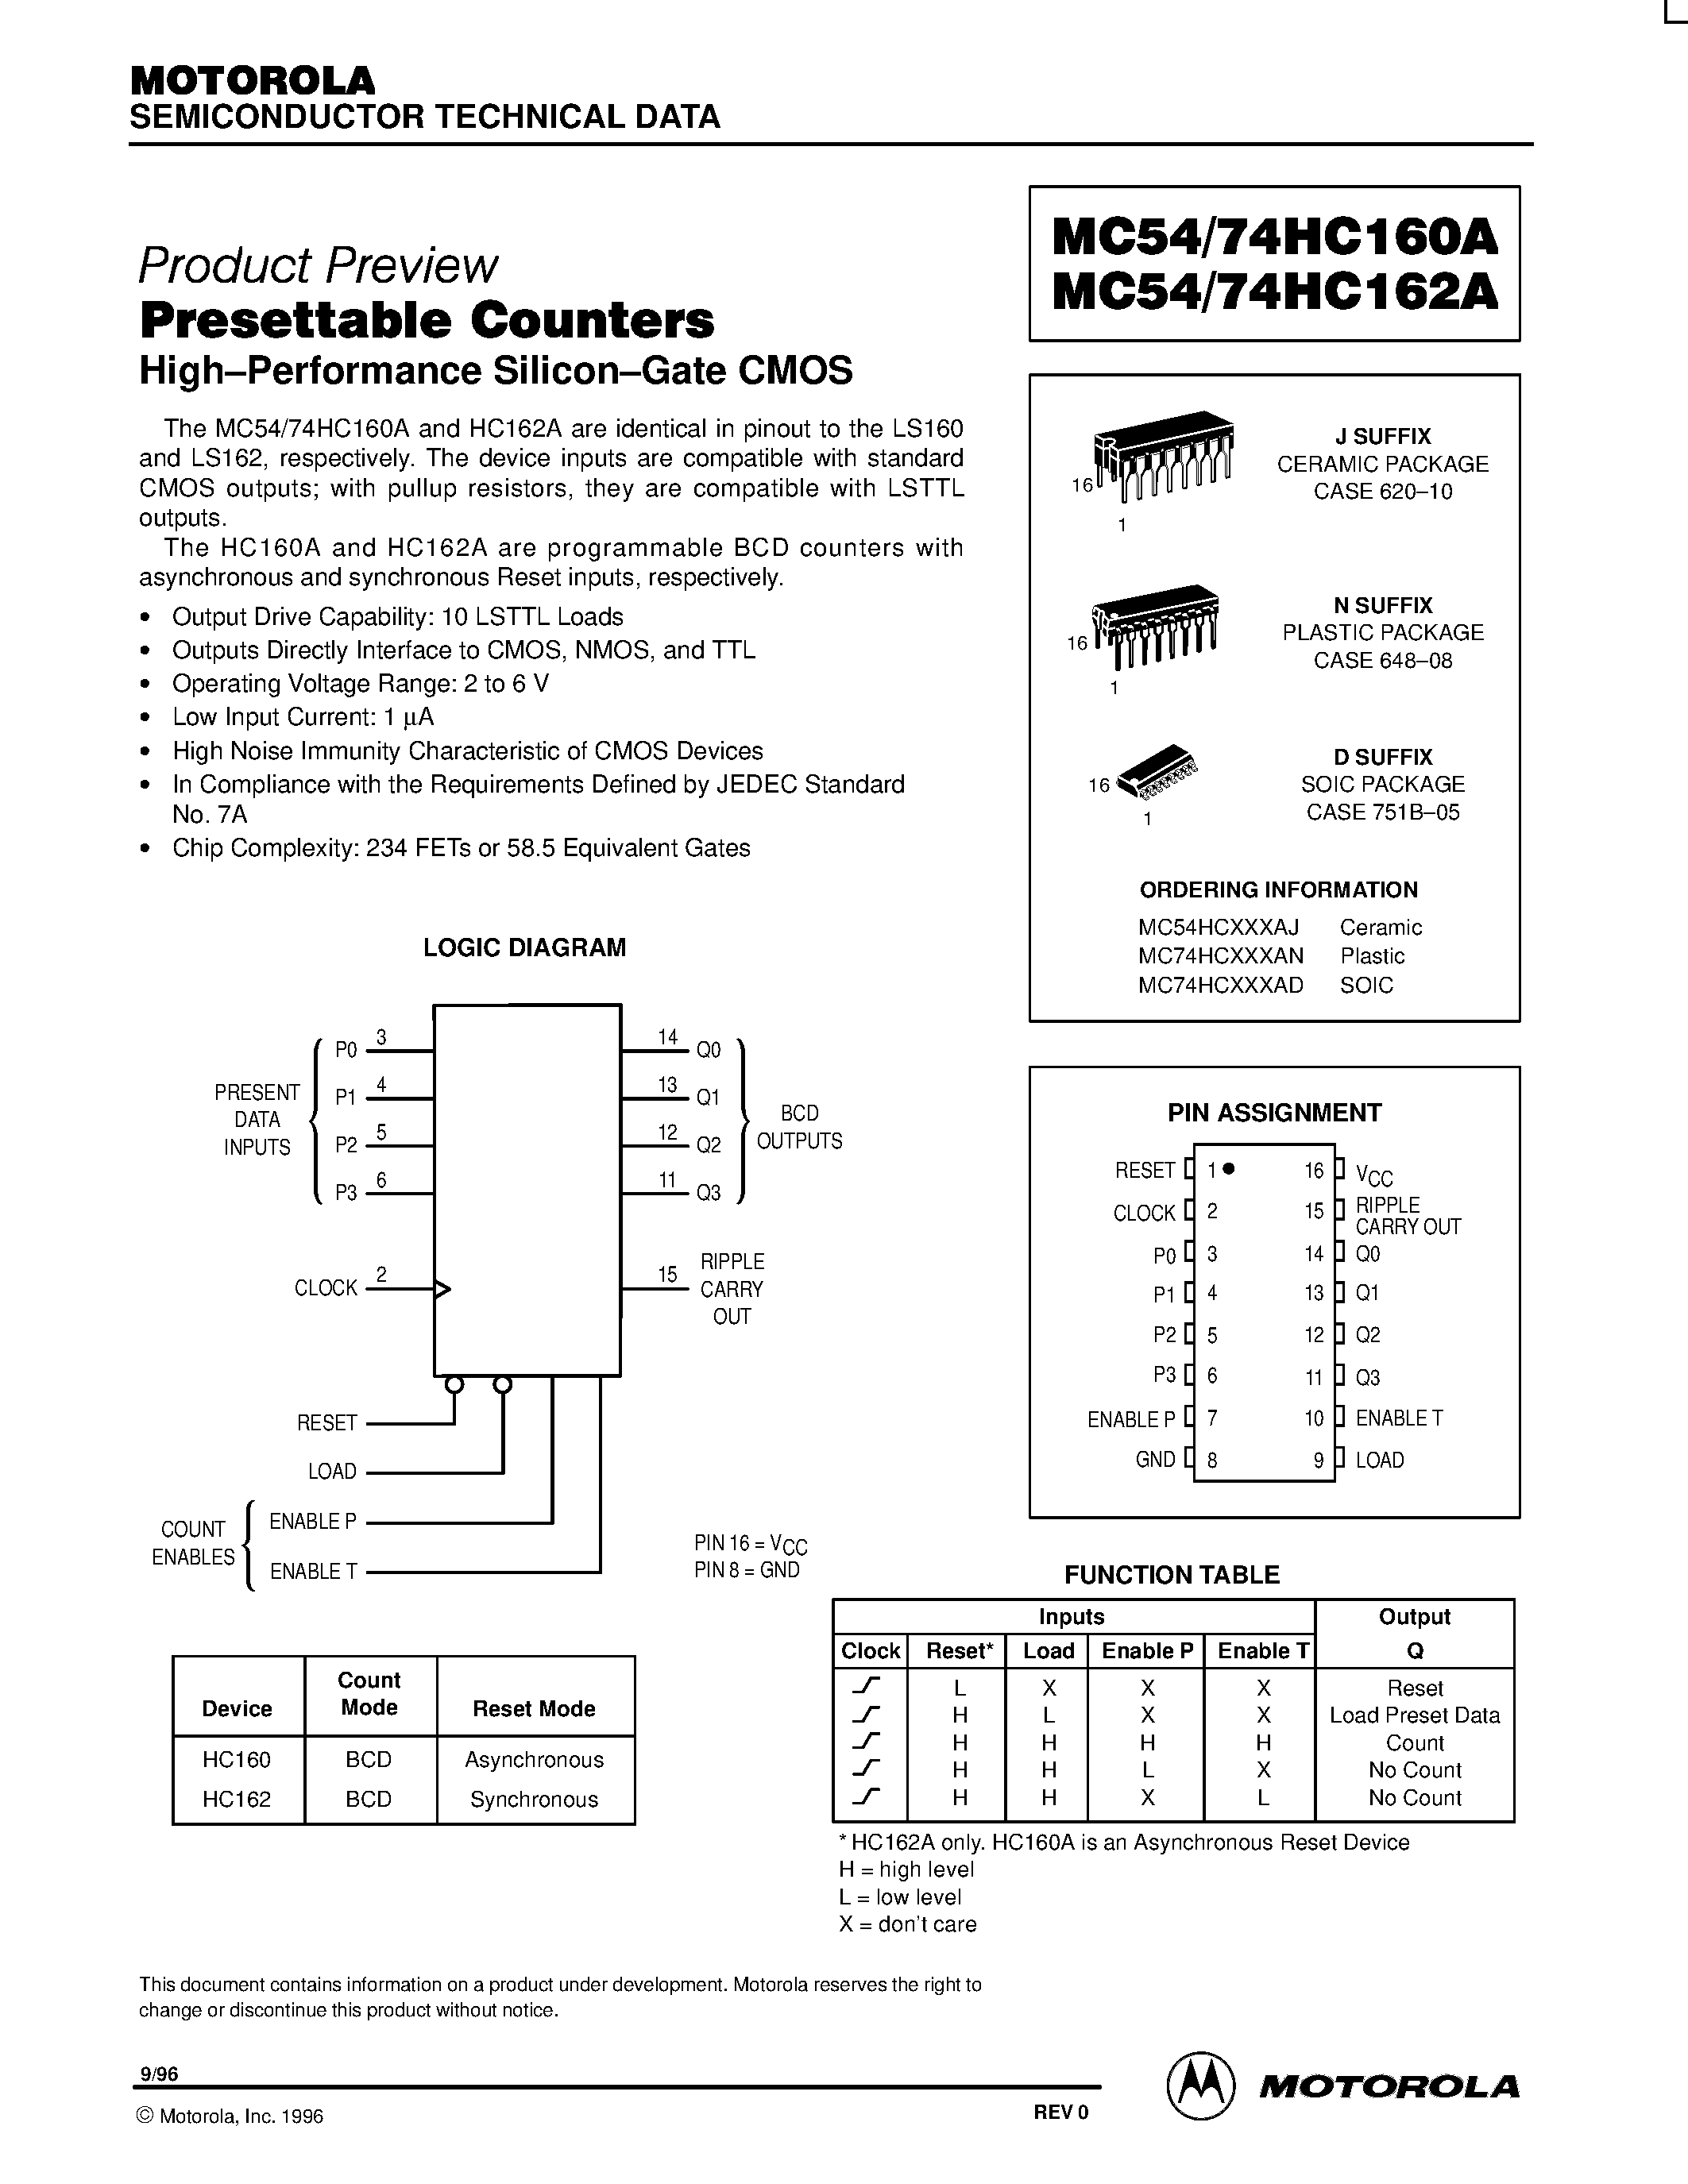 Даташит MC74HC160A - (MC74HC160A / MC74HC162A) Presettable Counters страница 1